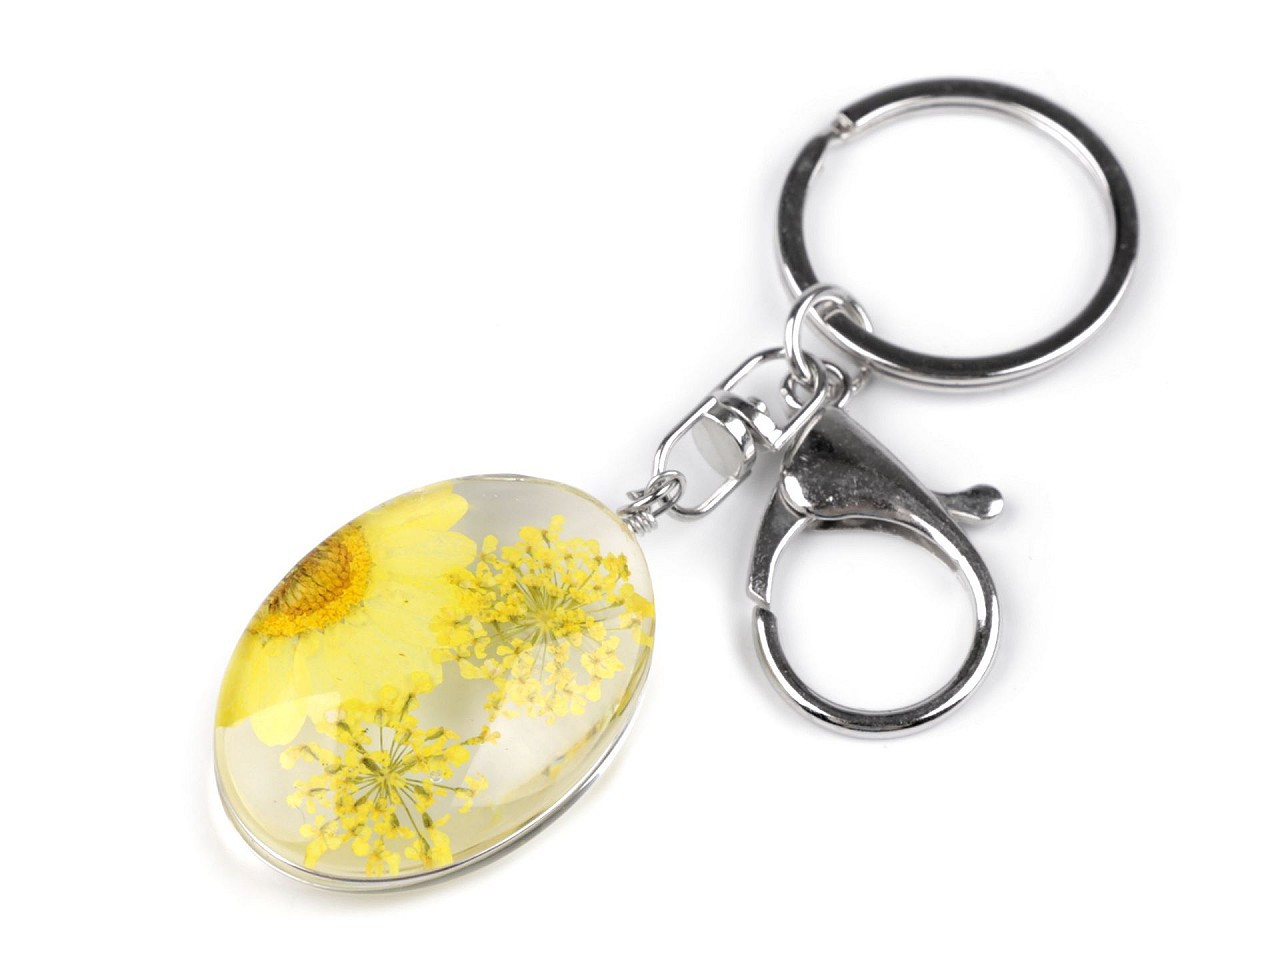 Přívěsek na klíče / kabelku lisované květy v oválu, barva 1 žlutá světlá